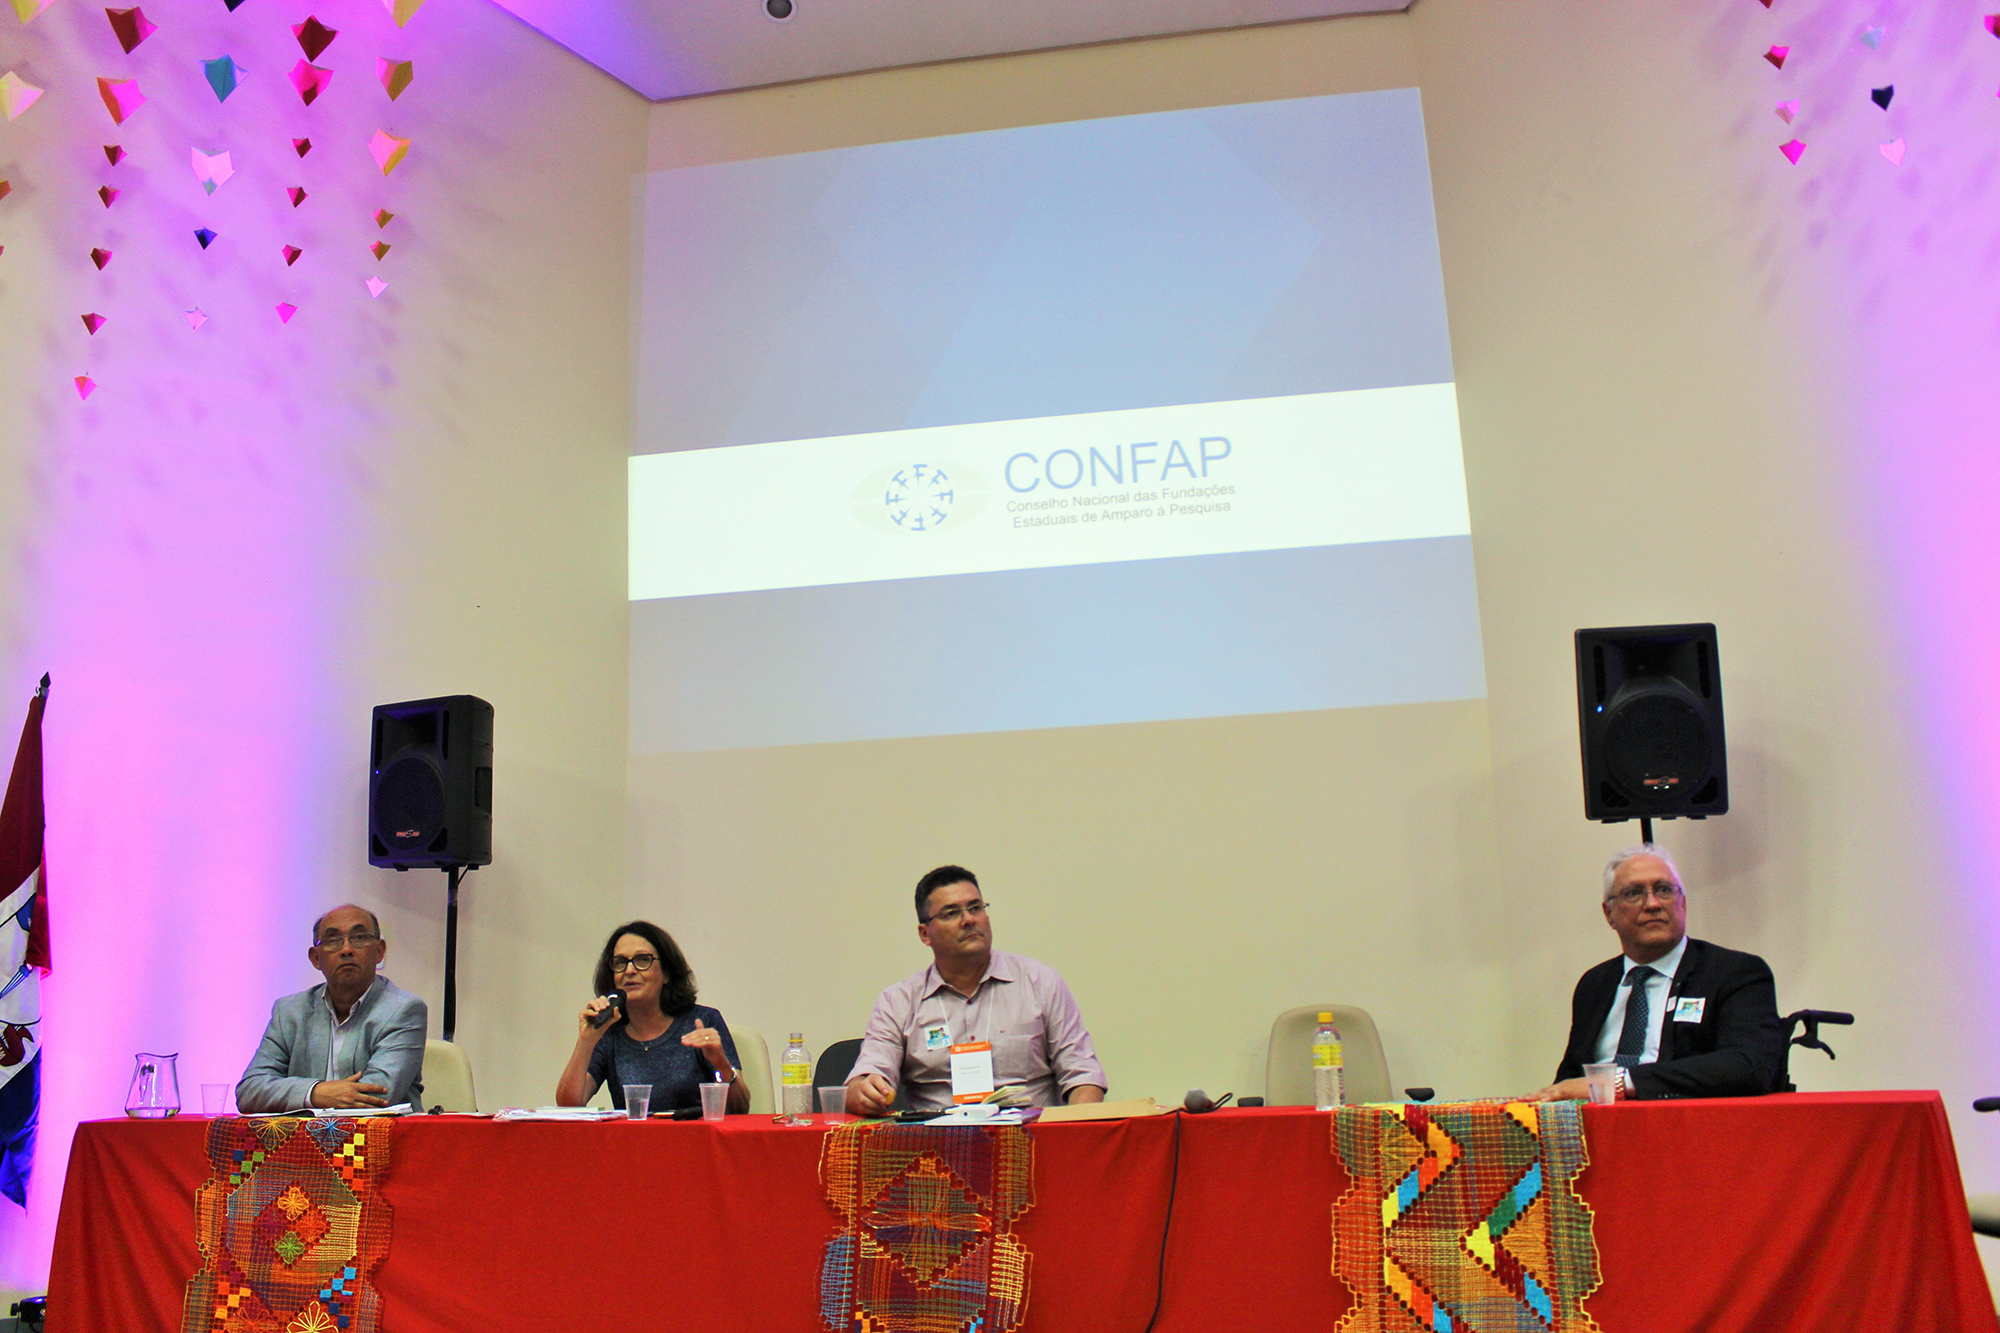 De izquierda a derecha: representante del FINEP, presidenta del CONFAP, representante de la SBPC y presidente del CNPq